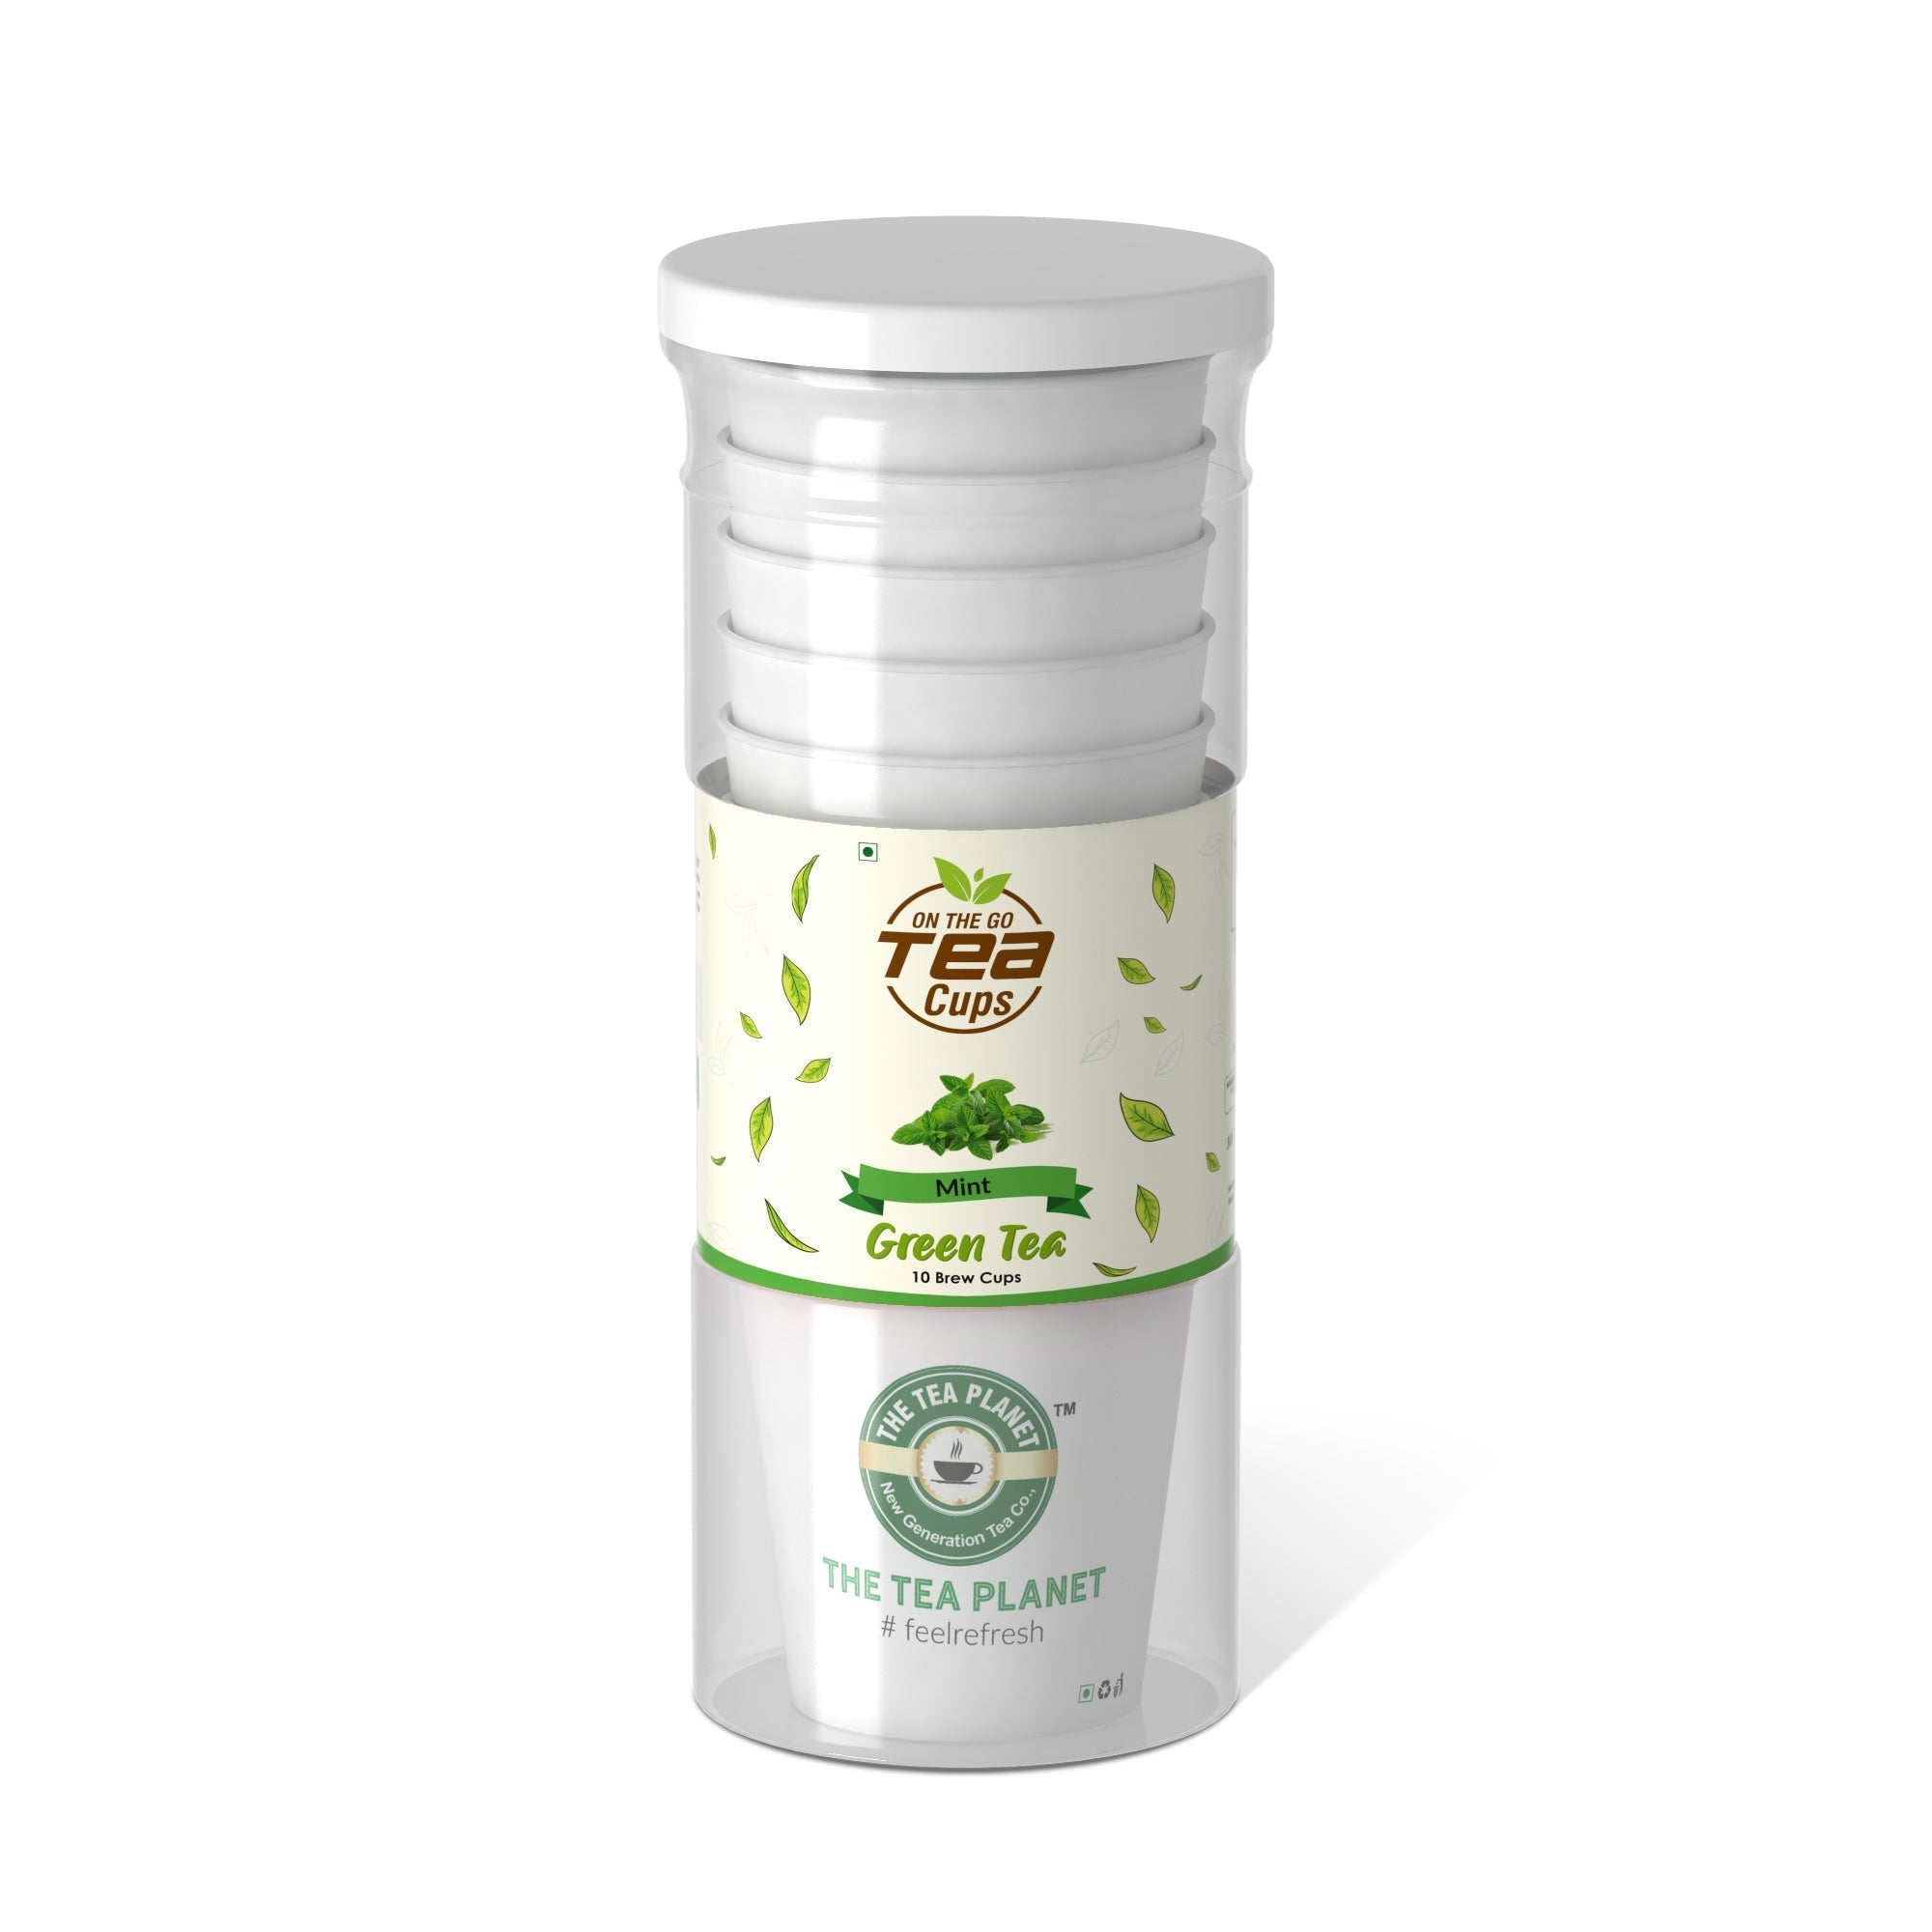 Mint Instant Green Tea Brew Cup - 20 cups